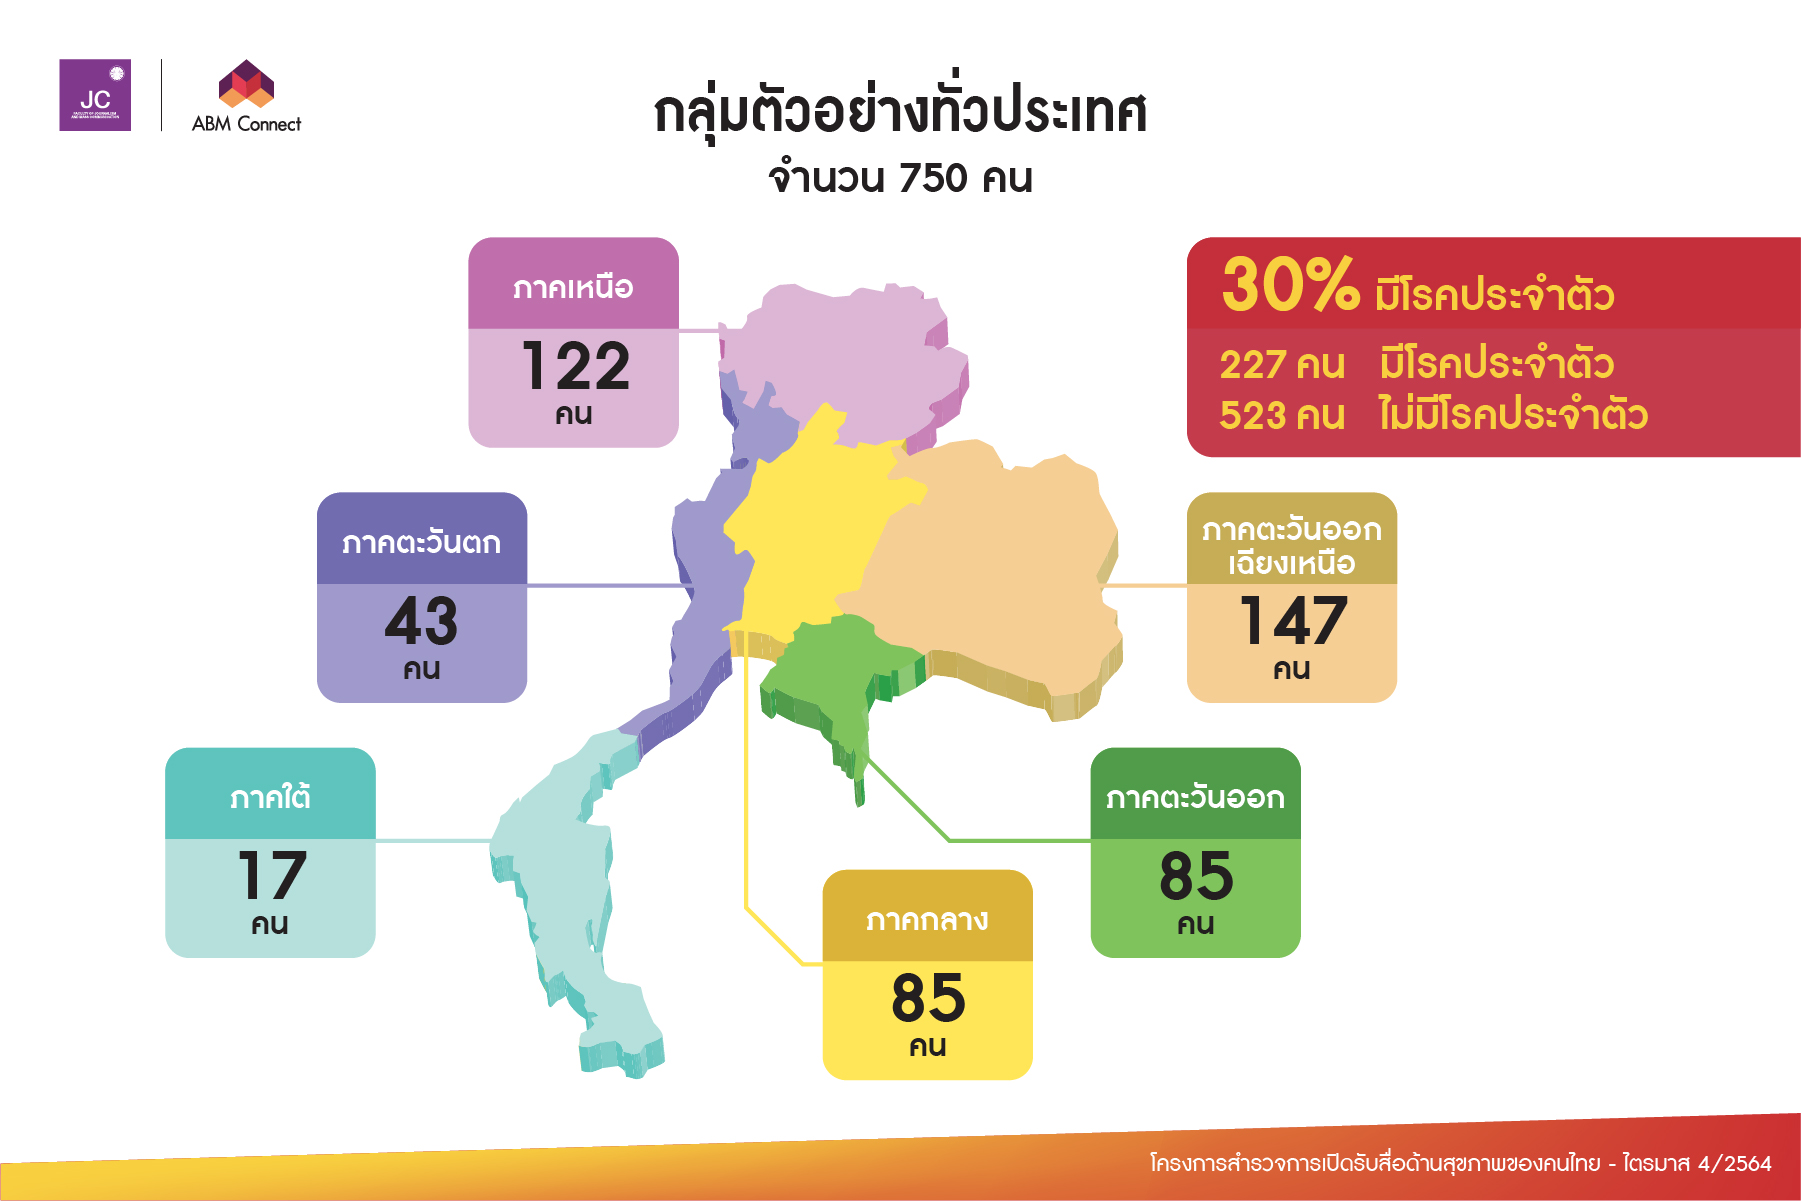 คนไทยอัปเดตข้อมูลปัญหาสุขภาพผ่านโซเชียลทุกแพลตฟอร์ม